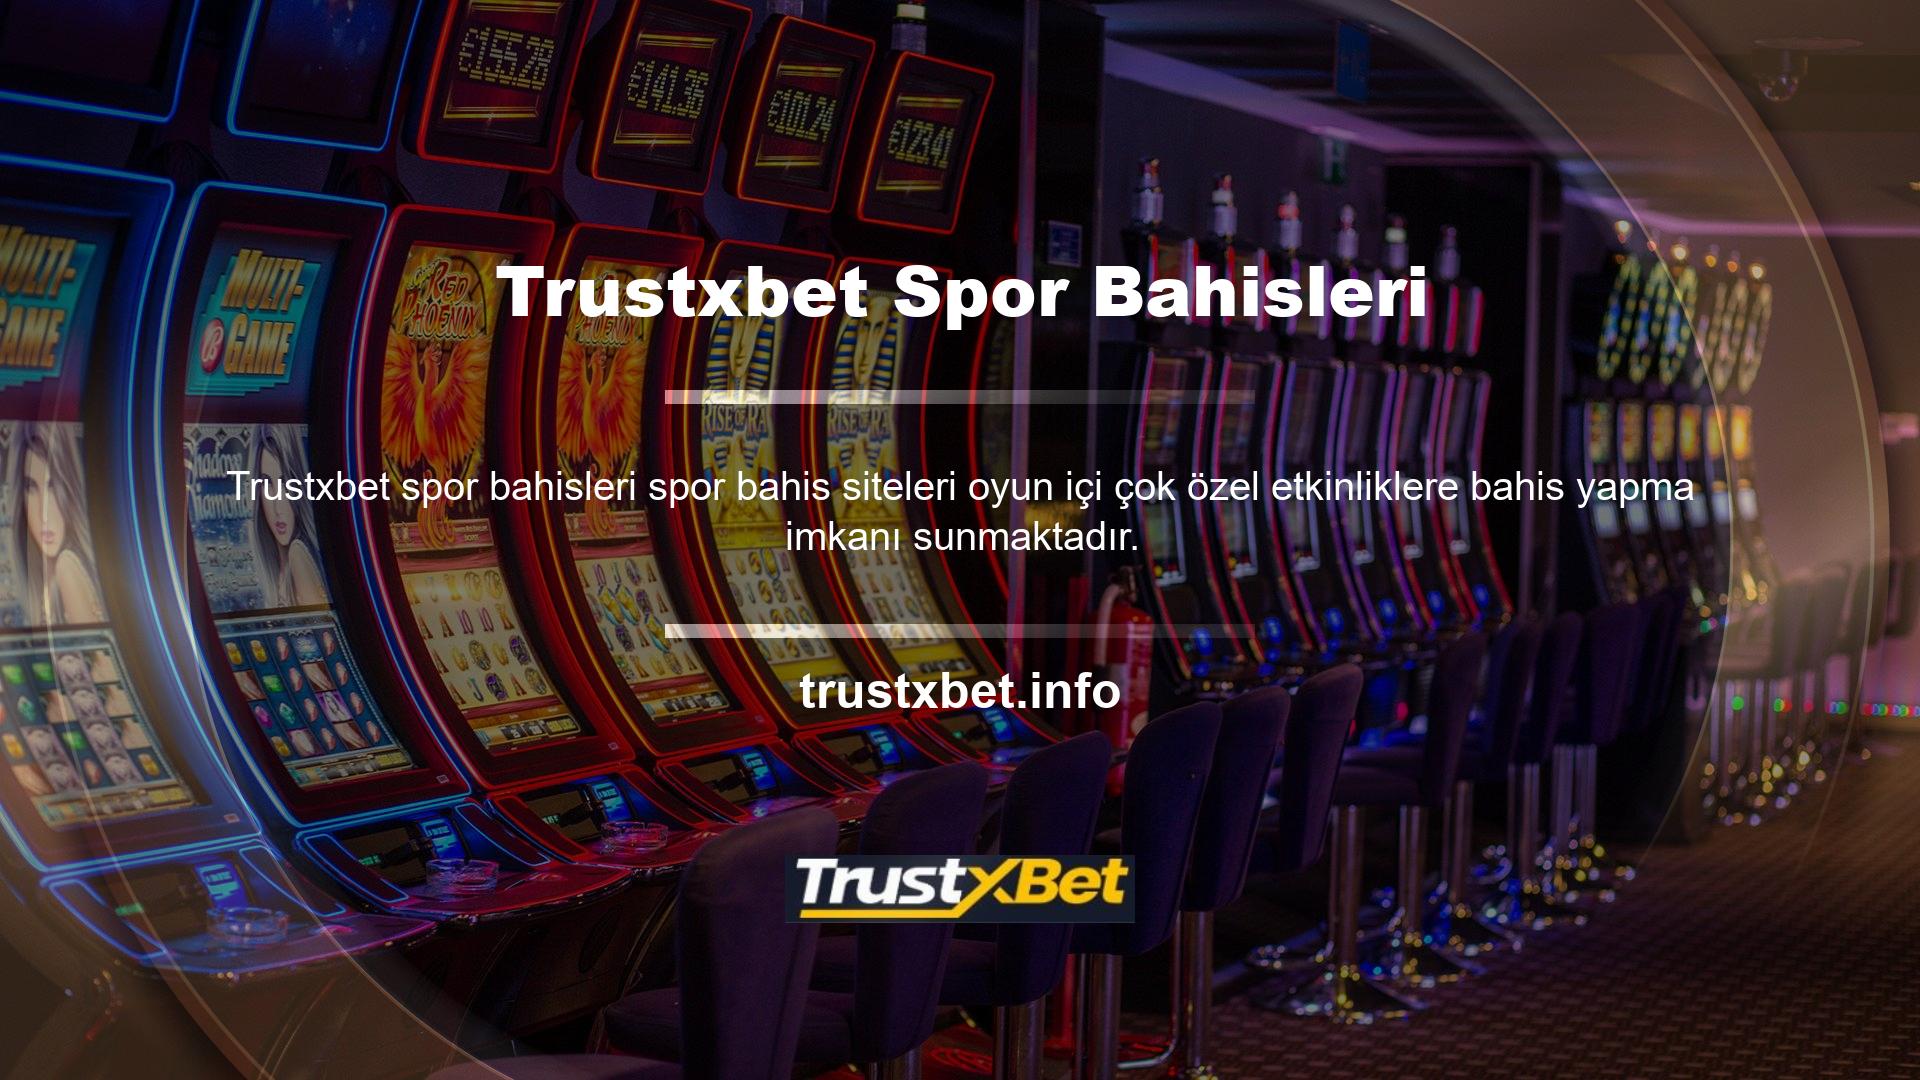 Trustxbet bu hizmeti sunan sitelerden biridir